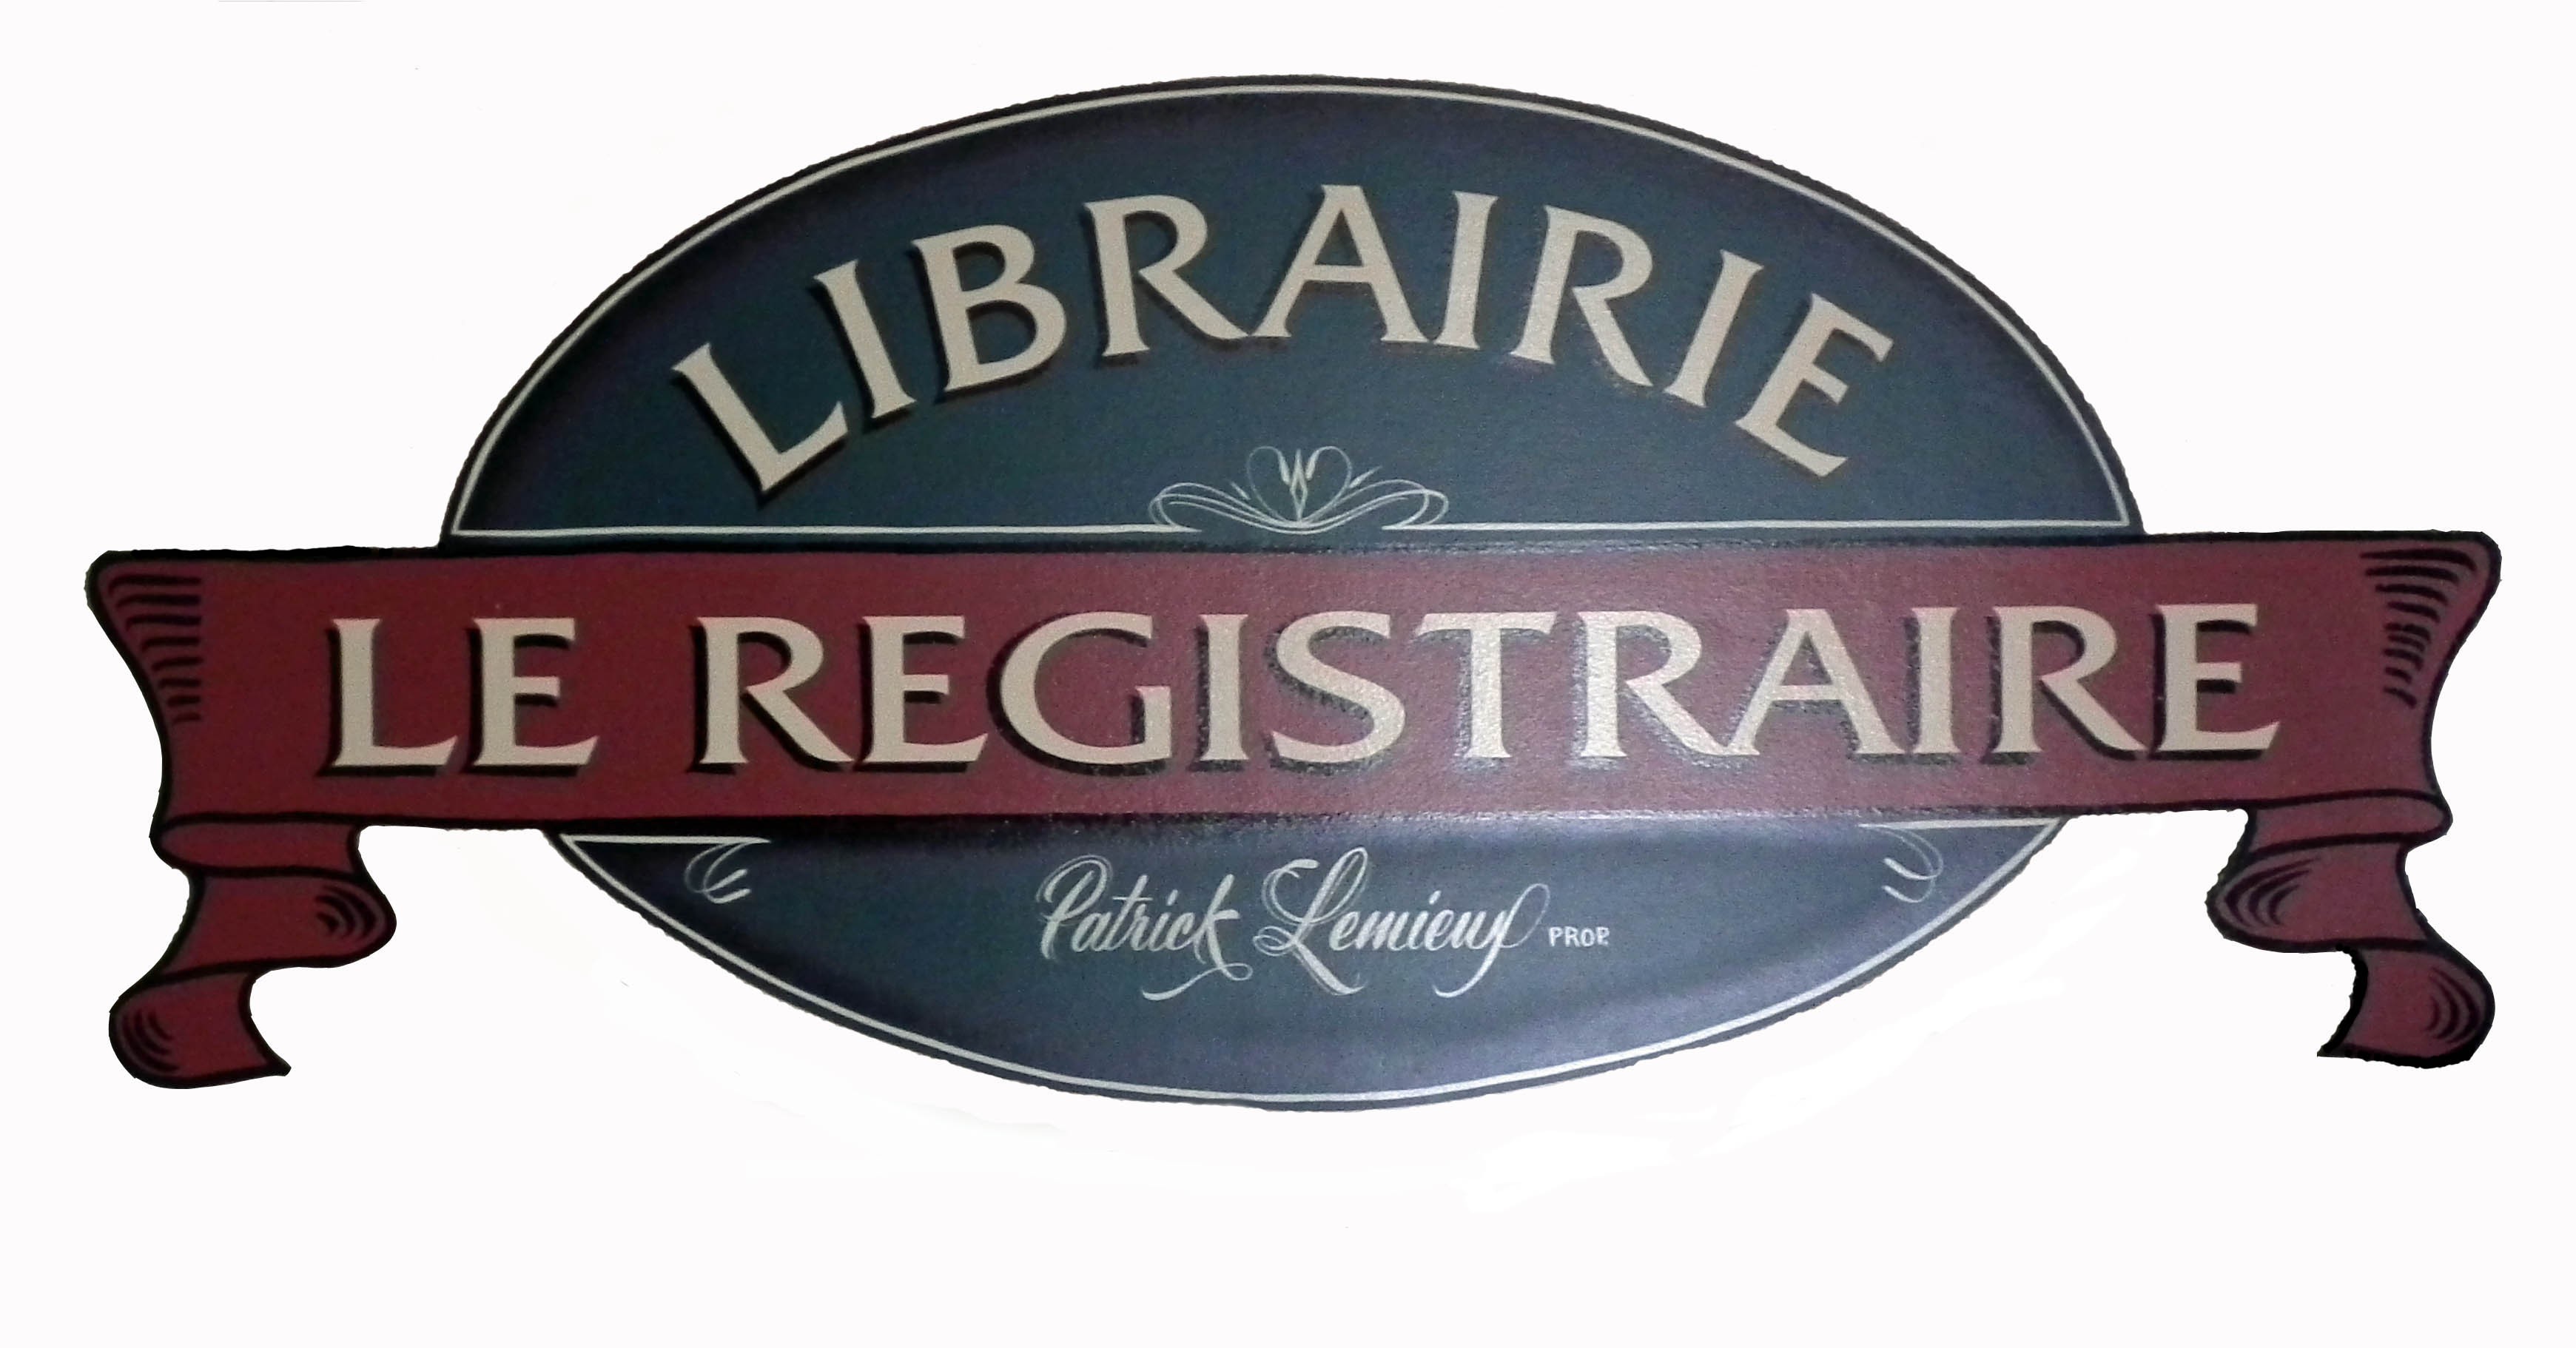 Librairie Le Registraire